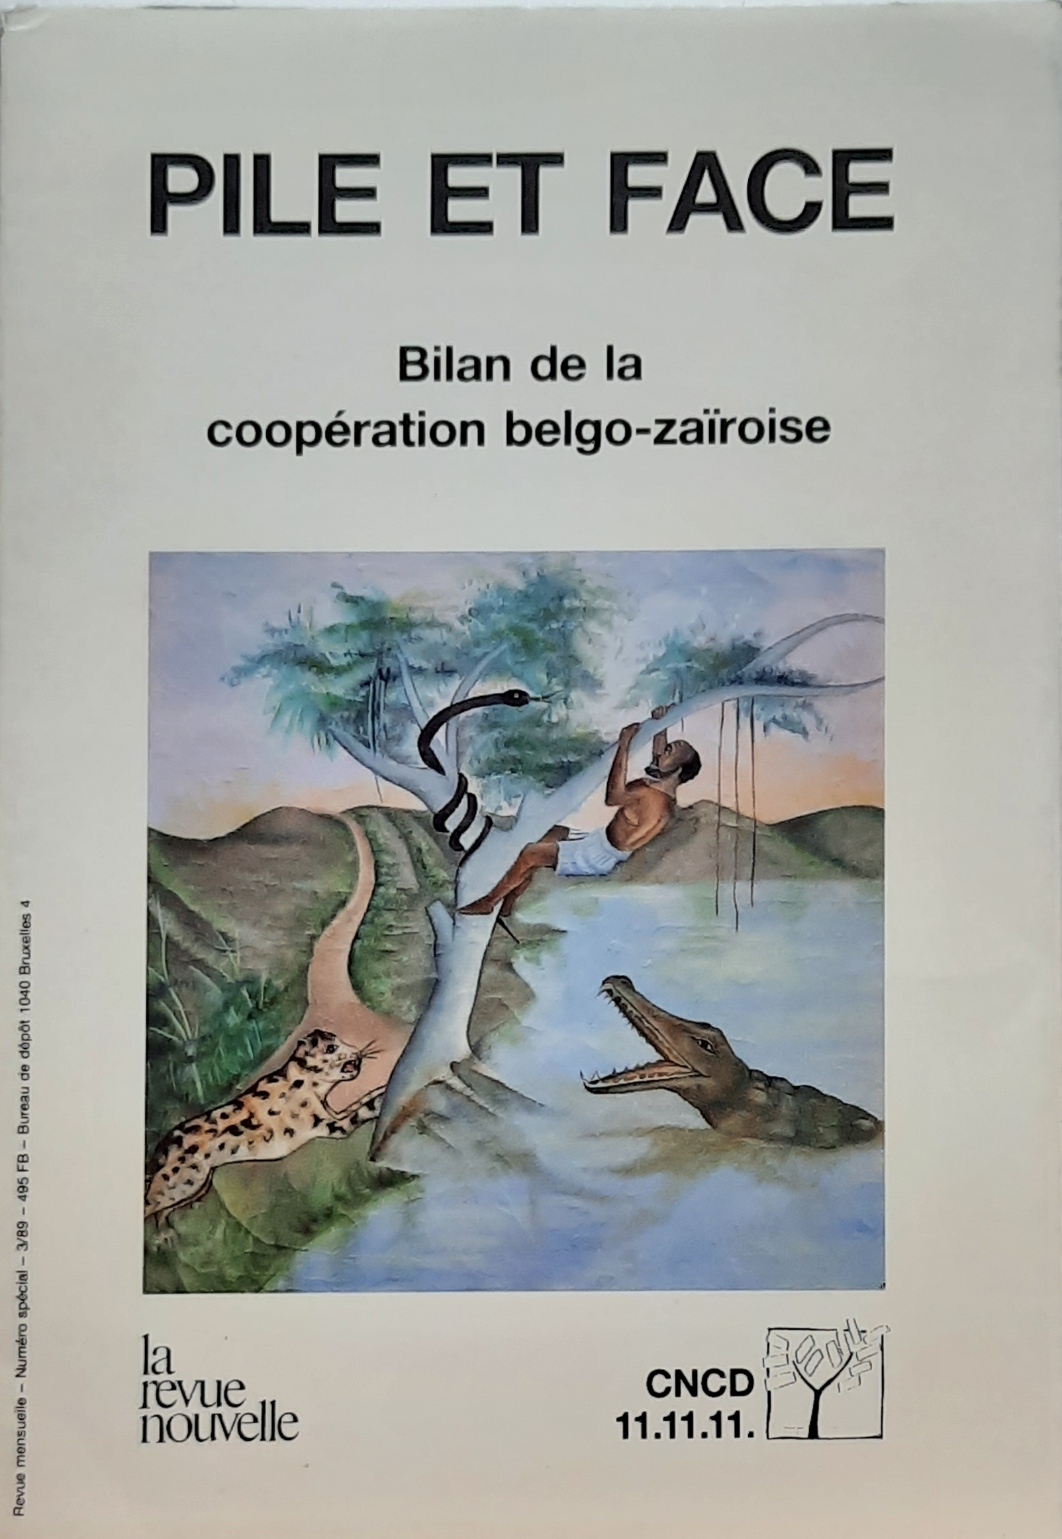 Book cover 202105320077: Collectif | Pile et face. Bilan de la coopération belgo-zaïroise